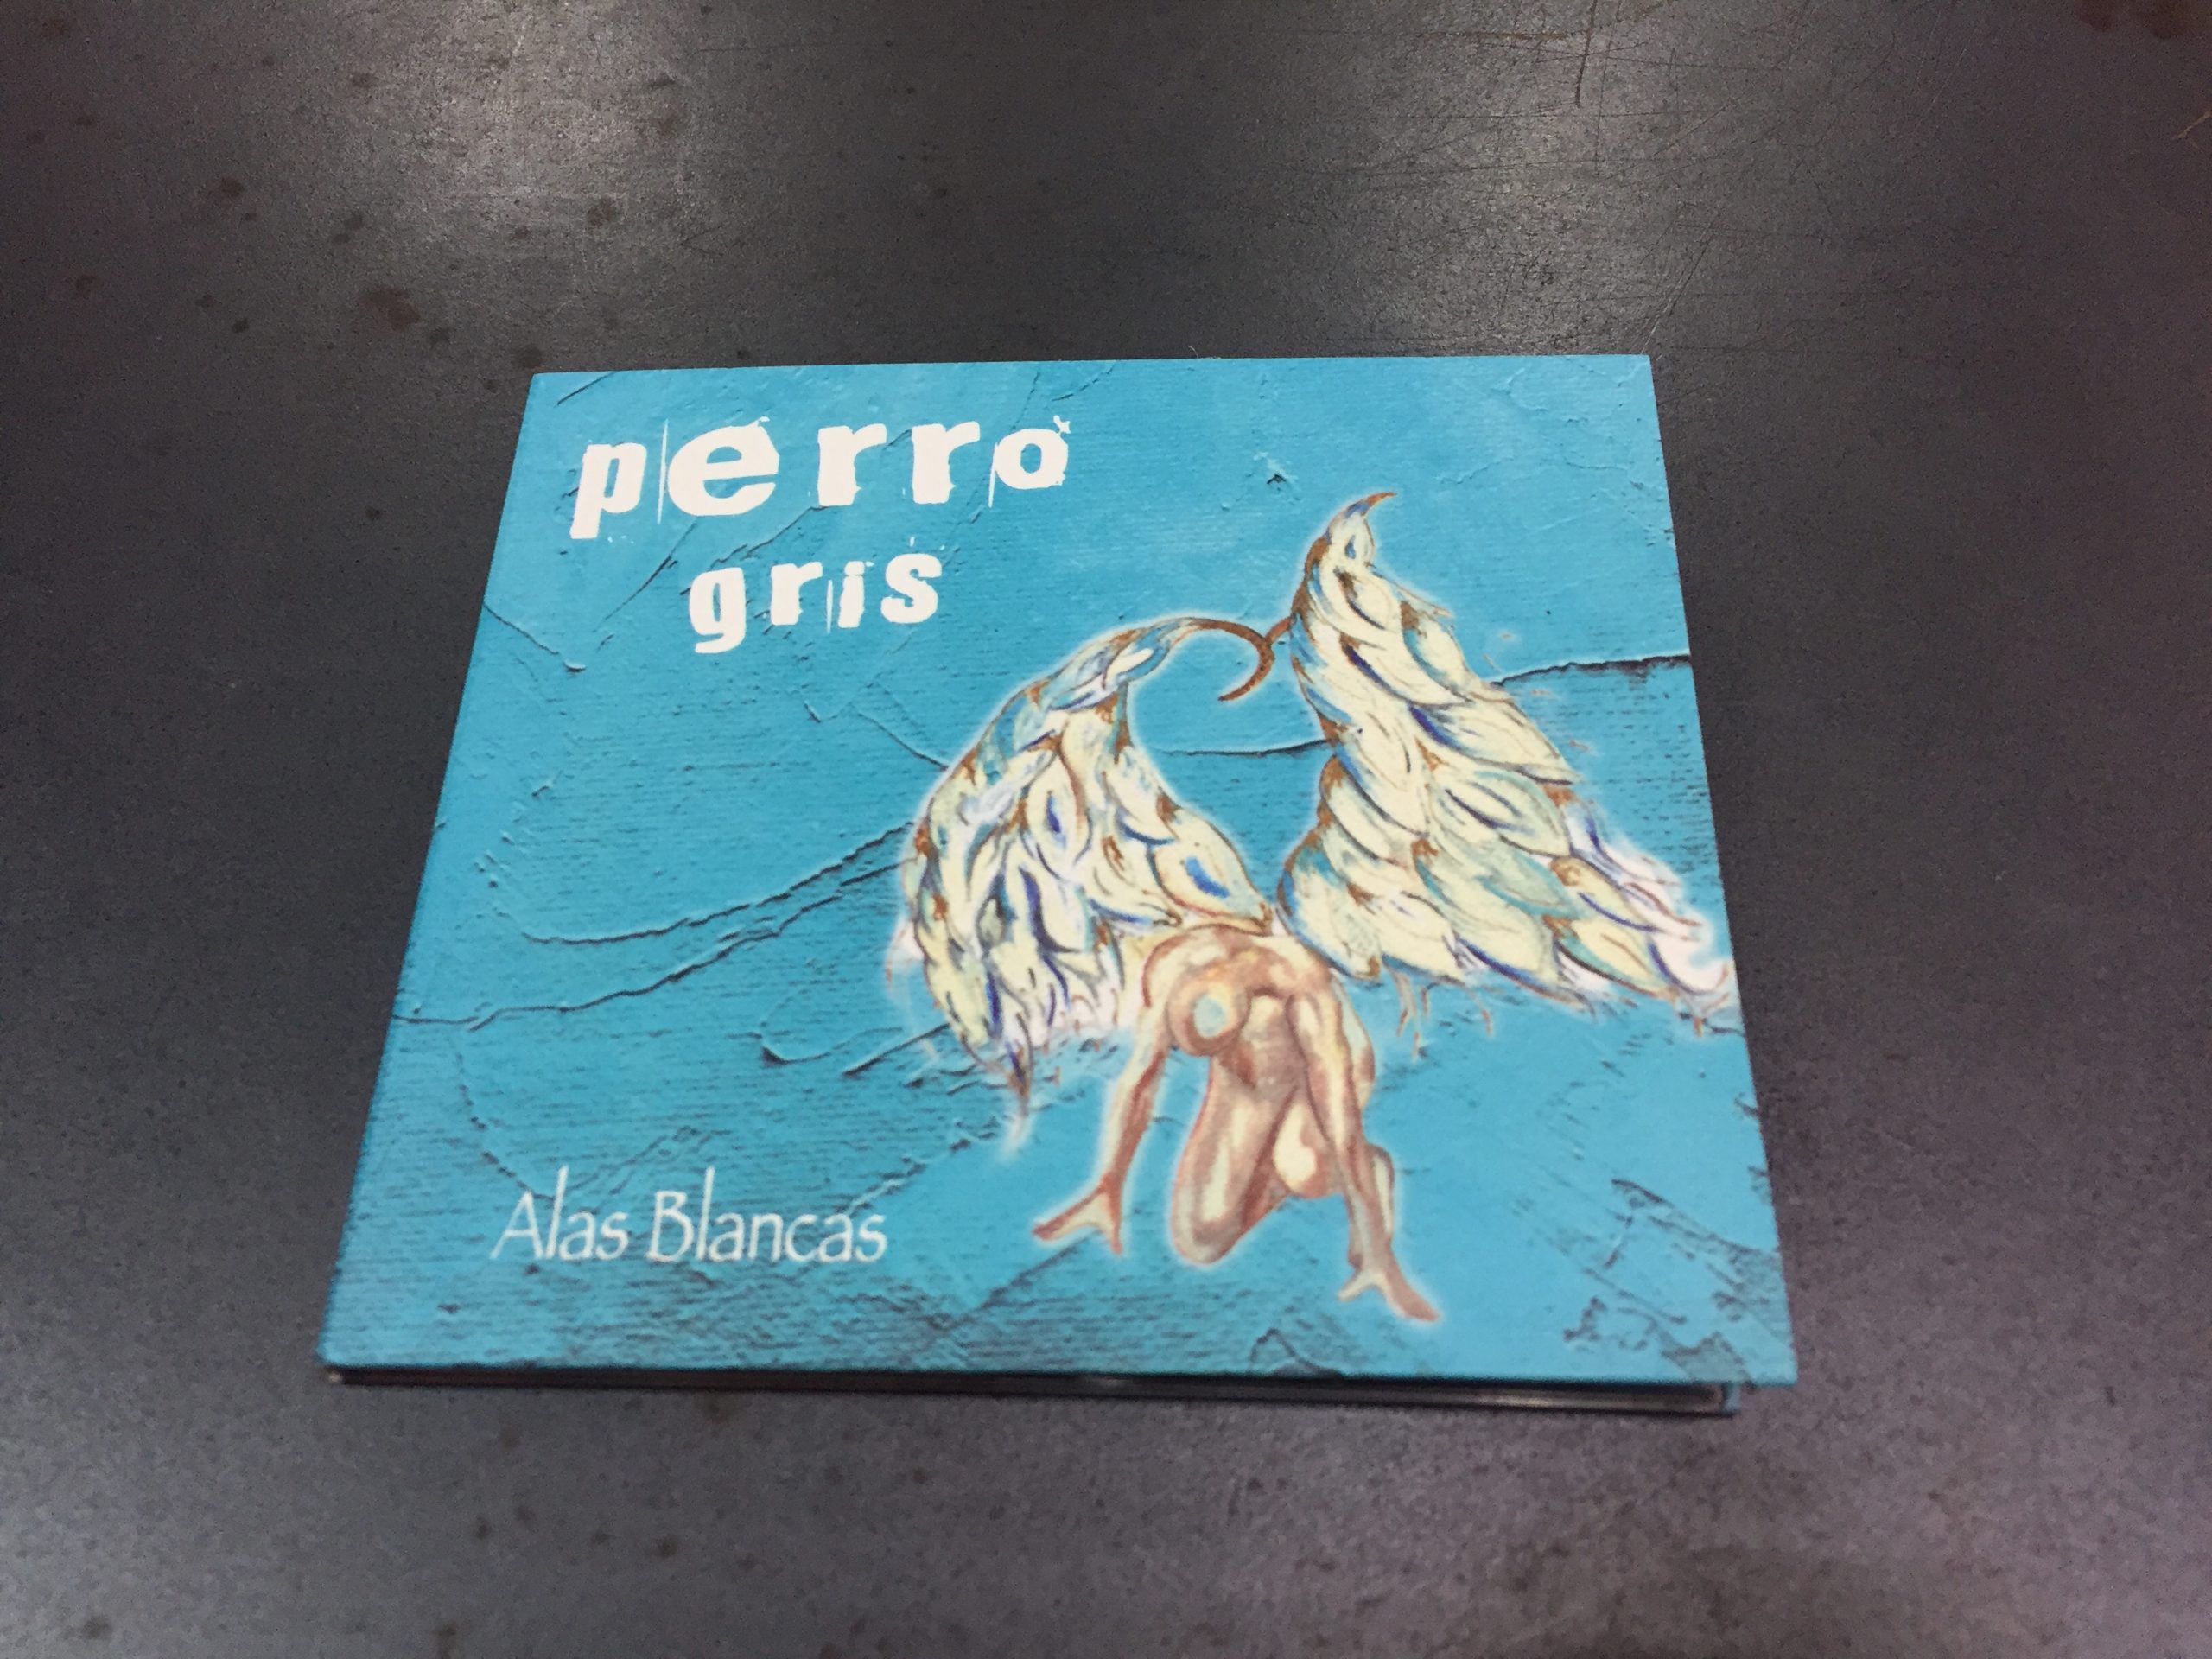 Resultado del diseño gráfico que hemos realizado para el quinto y nuevo disco “Alas Blancas” de Rafael de la Rubia con su grupo PERRO GRIS.